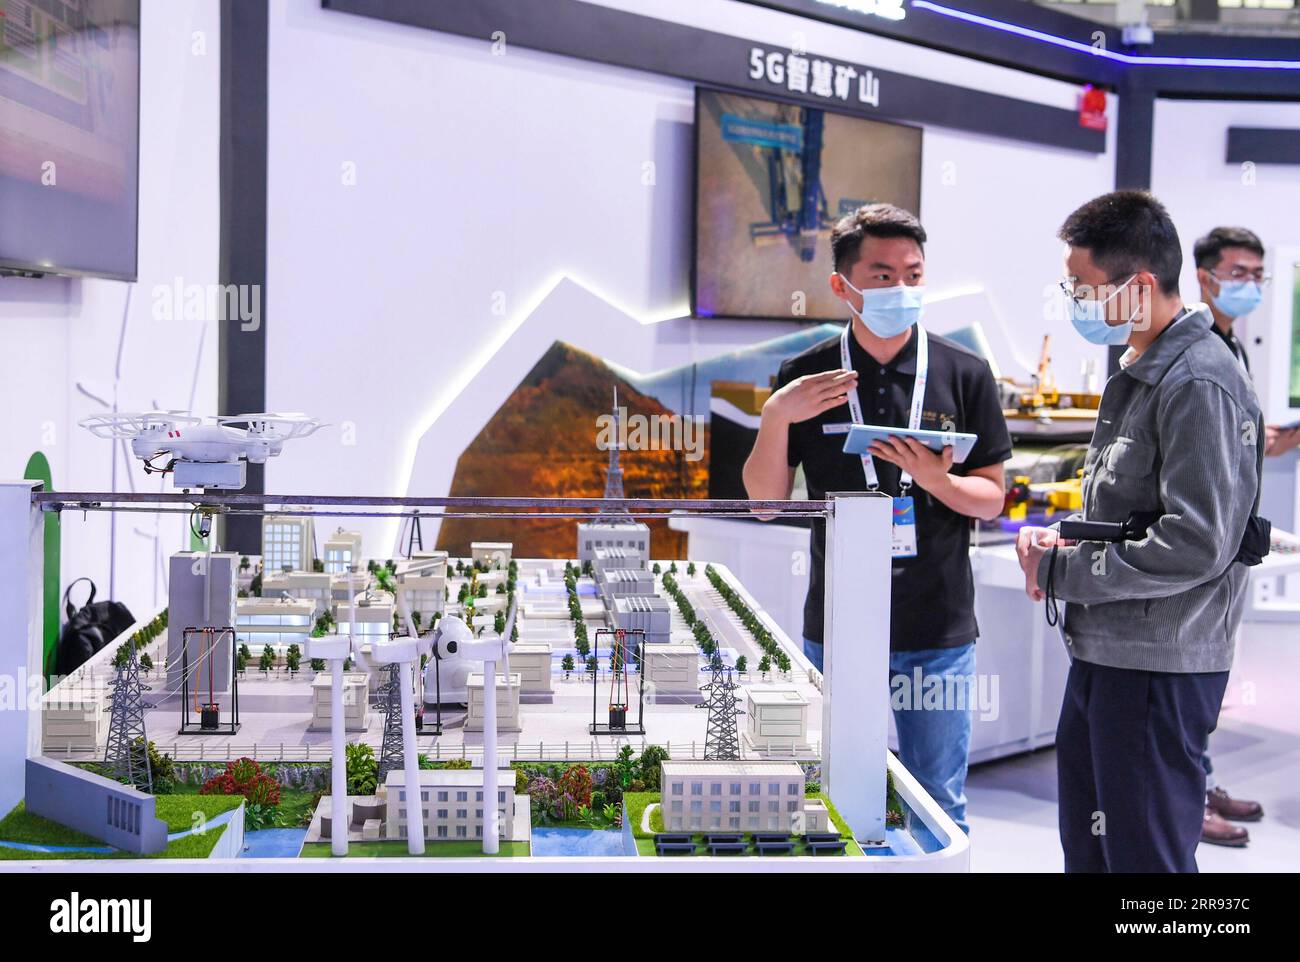 210526 -- GUIYANG, 26. Mai 2021 -- Ein Mitarbeiter von L stellt auf der China International Big Data Industry Expo 2021 in Guiyang, Provinz Guizhou im Südwesten Chinas, am 26. Mai 2021 ein intelligentes 5G-Netz vor. Die expo wurde am Mittwoch eröffnet und zeigt die neuesten wissenschaftlichen und technologischen Innovationen und Errungenschaften in relevanten Bereichen. CHINA-GUIZHOU-GUIYANG-BIG DATA INDUSTRY EXPO-TECHNOLOGY CN YANGXWENBIN PUBLICATIONXNOTXINXCHN Stockfoto